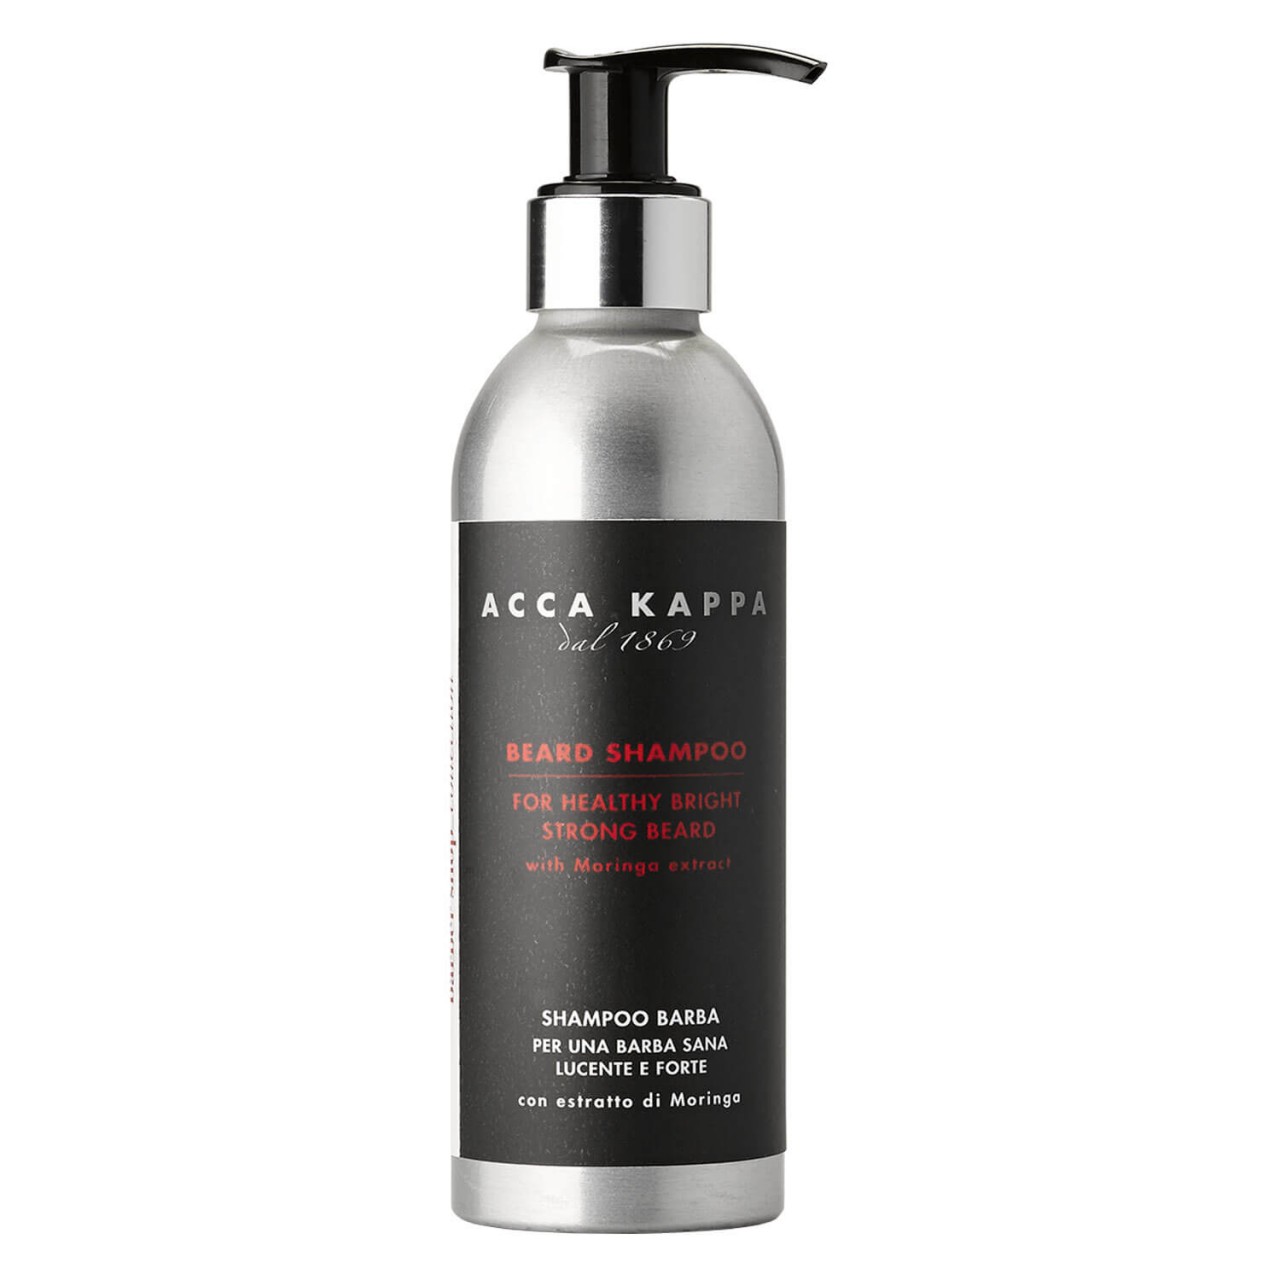 ACCA KAPPA - Beard Shampoo